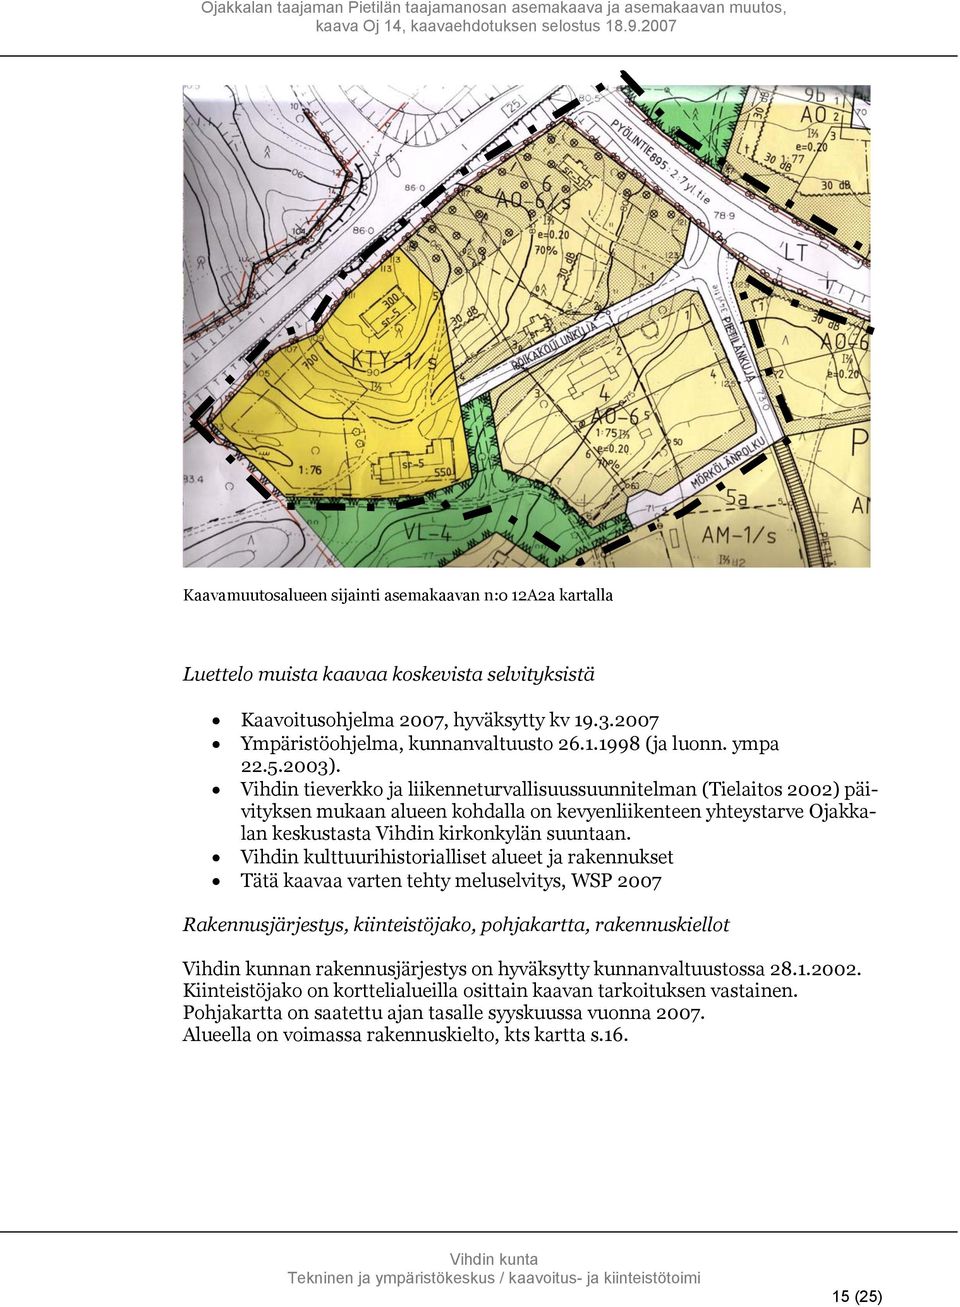 Vihdin tieverkko ja liikenneturvallisuussuunnitelman (Tielaitos 2002) päivityksen mukaan alueen kohdalla on kevyenliikenteen yhteystarve Ojakkalan keskustasta Vihdin kirkonkylän suuntaan.